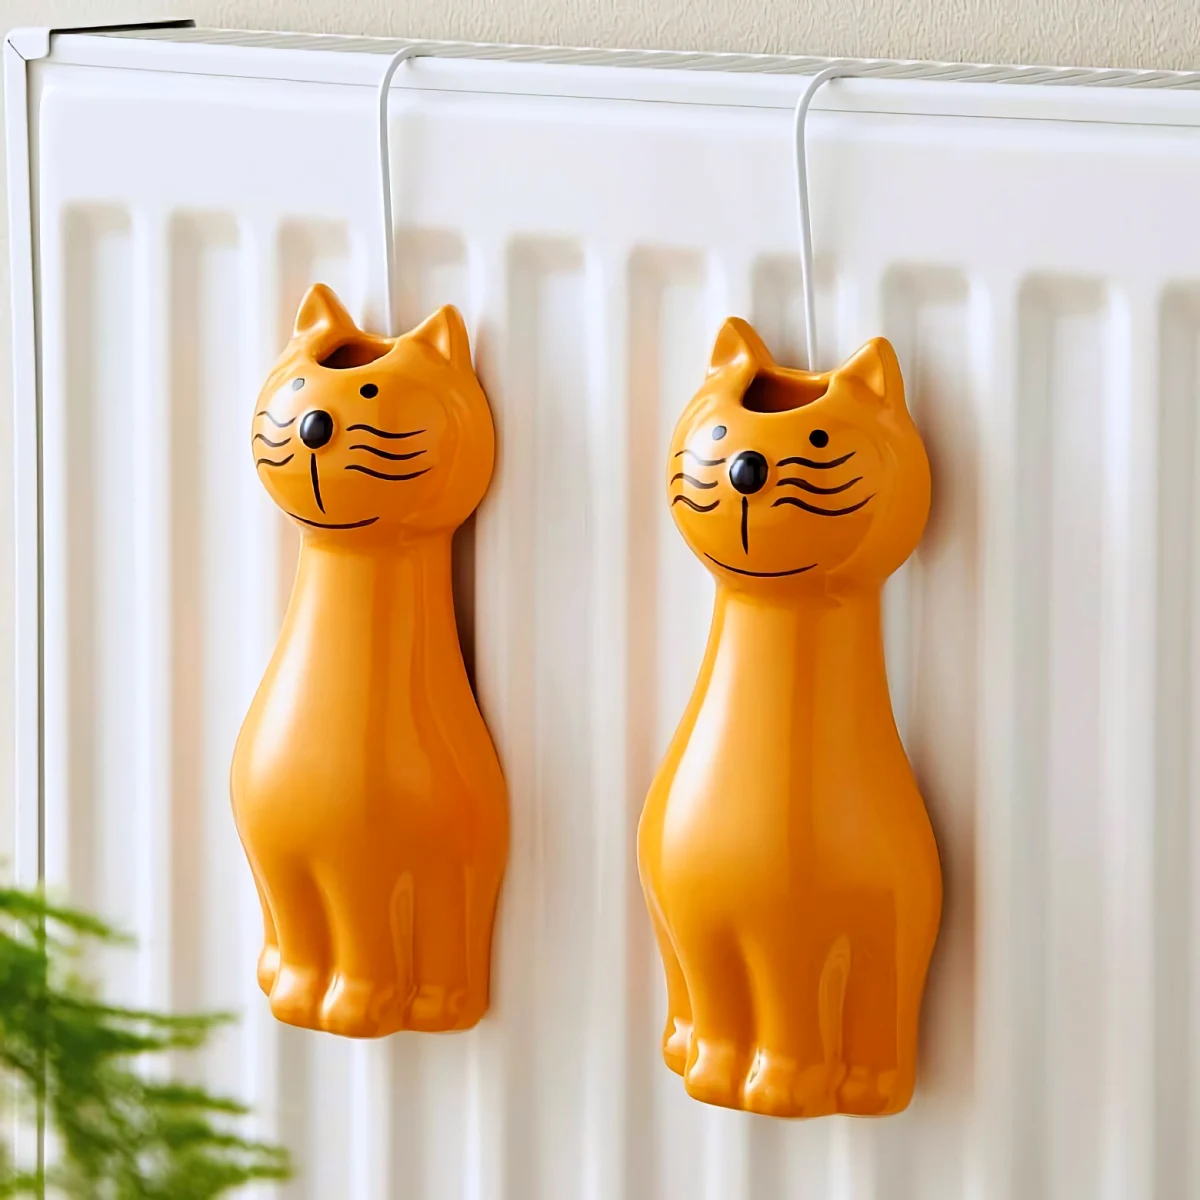 humidificateur avec des chats oranges ceramique radiateur